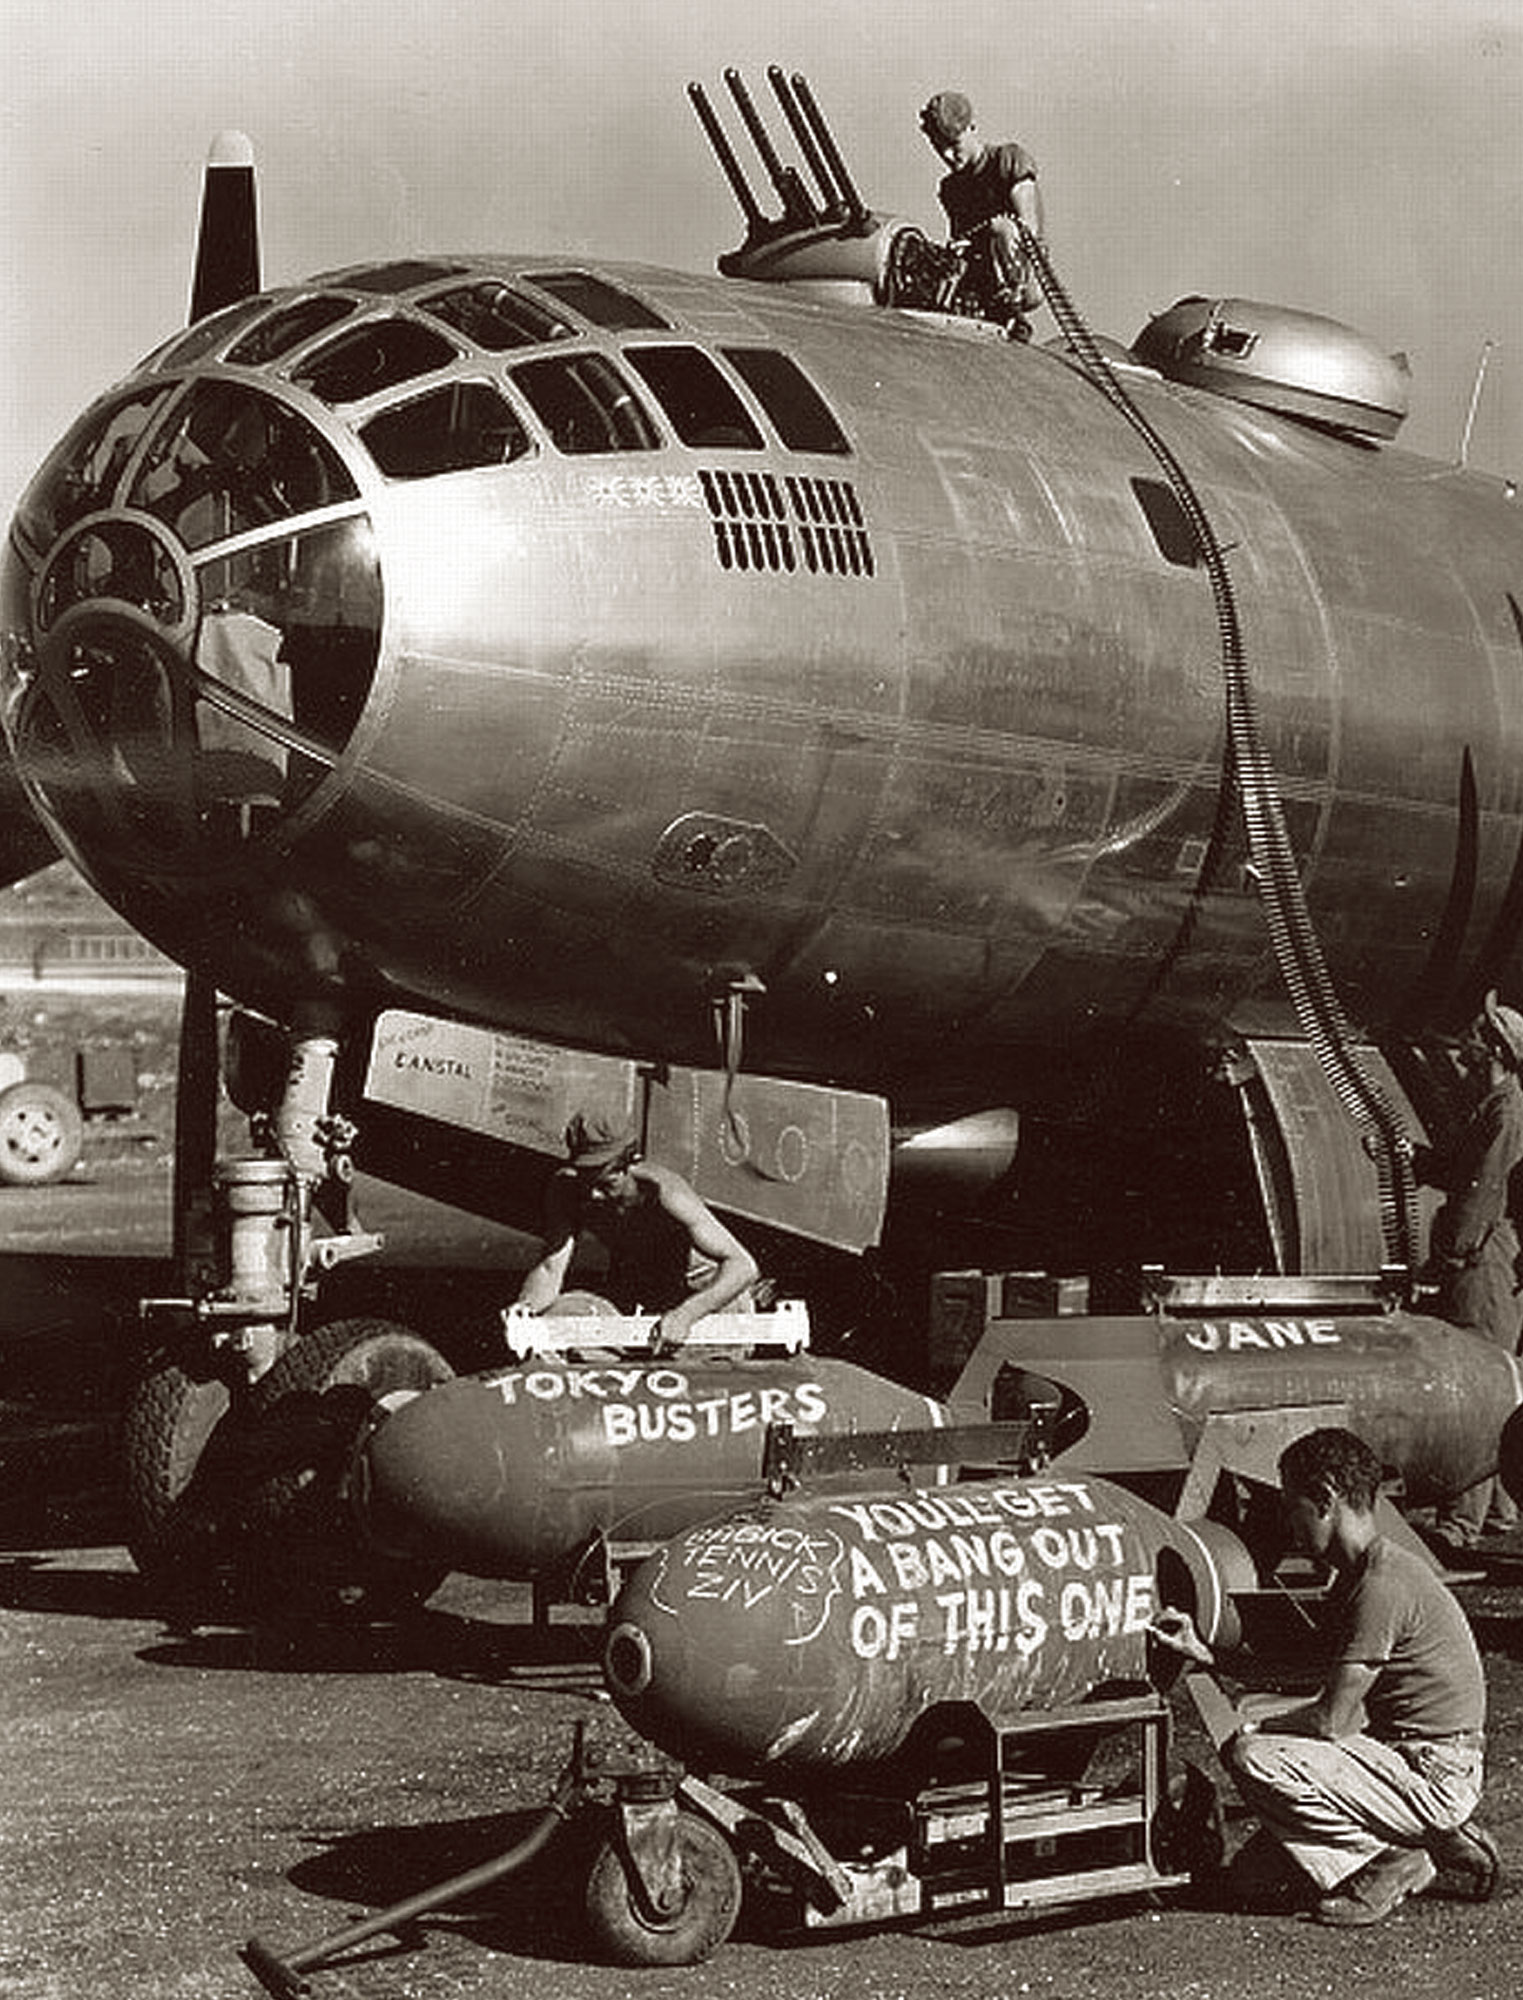 B-29 SUPER FORTRESS WESTON AC VOLT METER